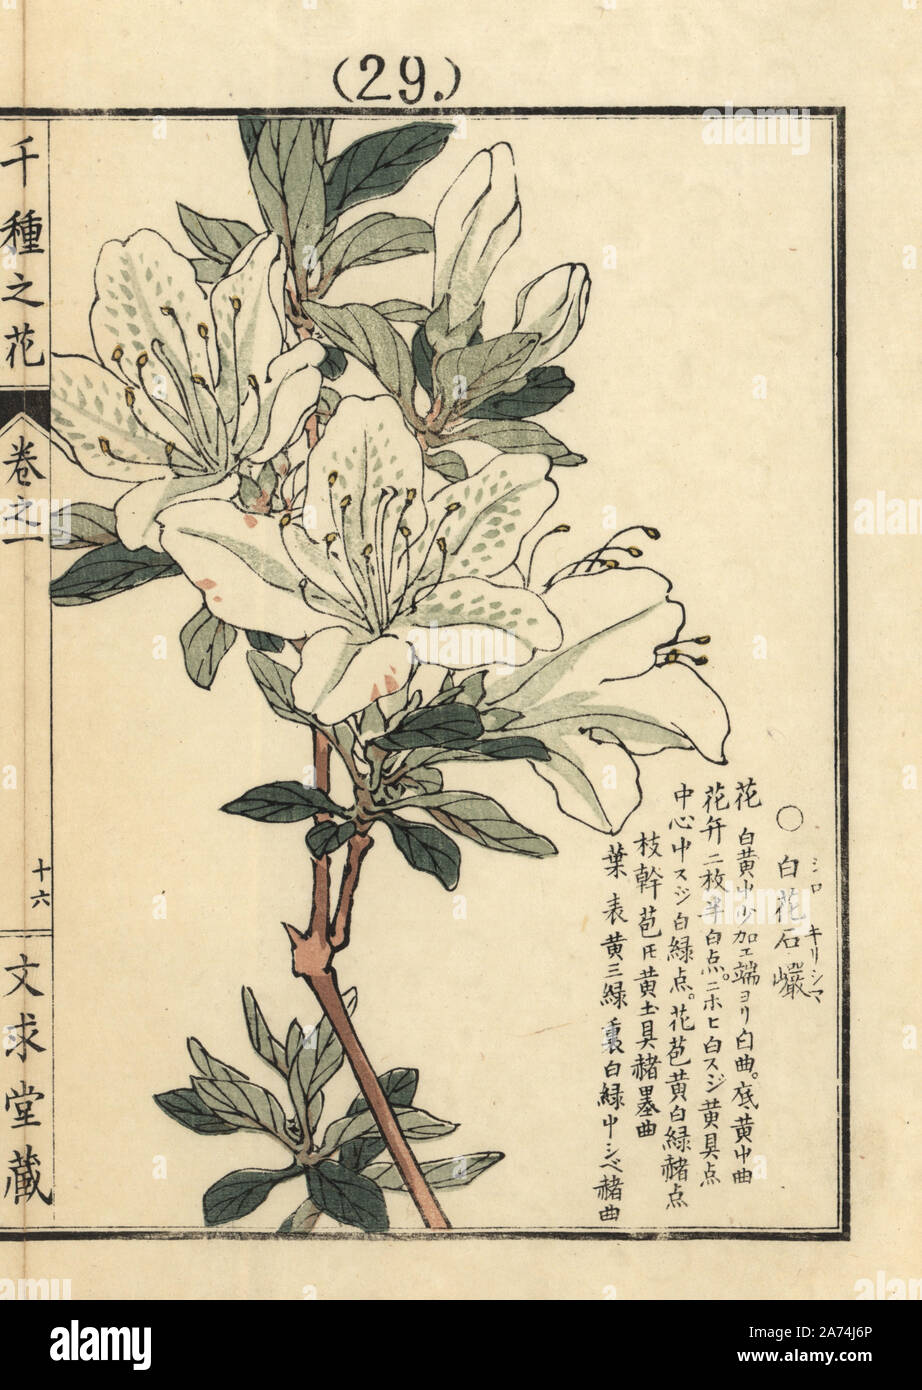 Shiro kirishima tsutsuji or white kurume azalea, Rhododendron obtusum. Handcoloured woodblock print by Kono Bairei from Senshu no Hana (One Thousand Varieties of Flowers), Bunkyudo, Kyoto, 1900. Stock Photo